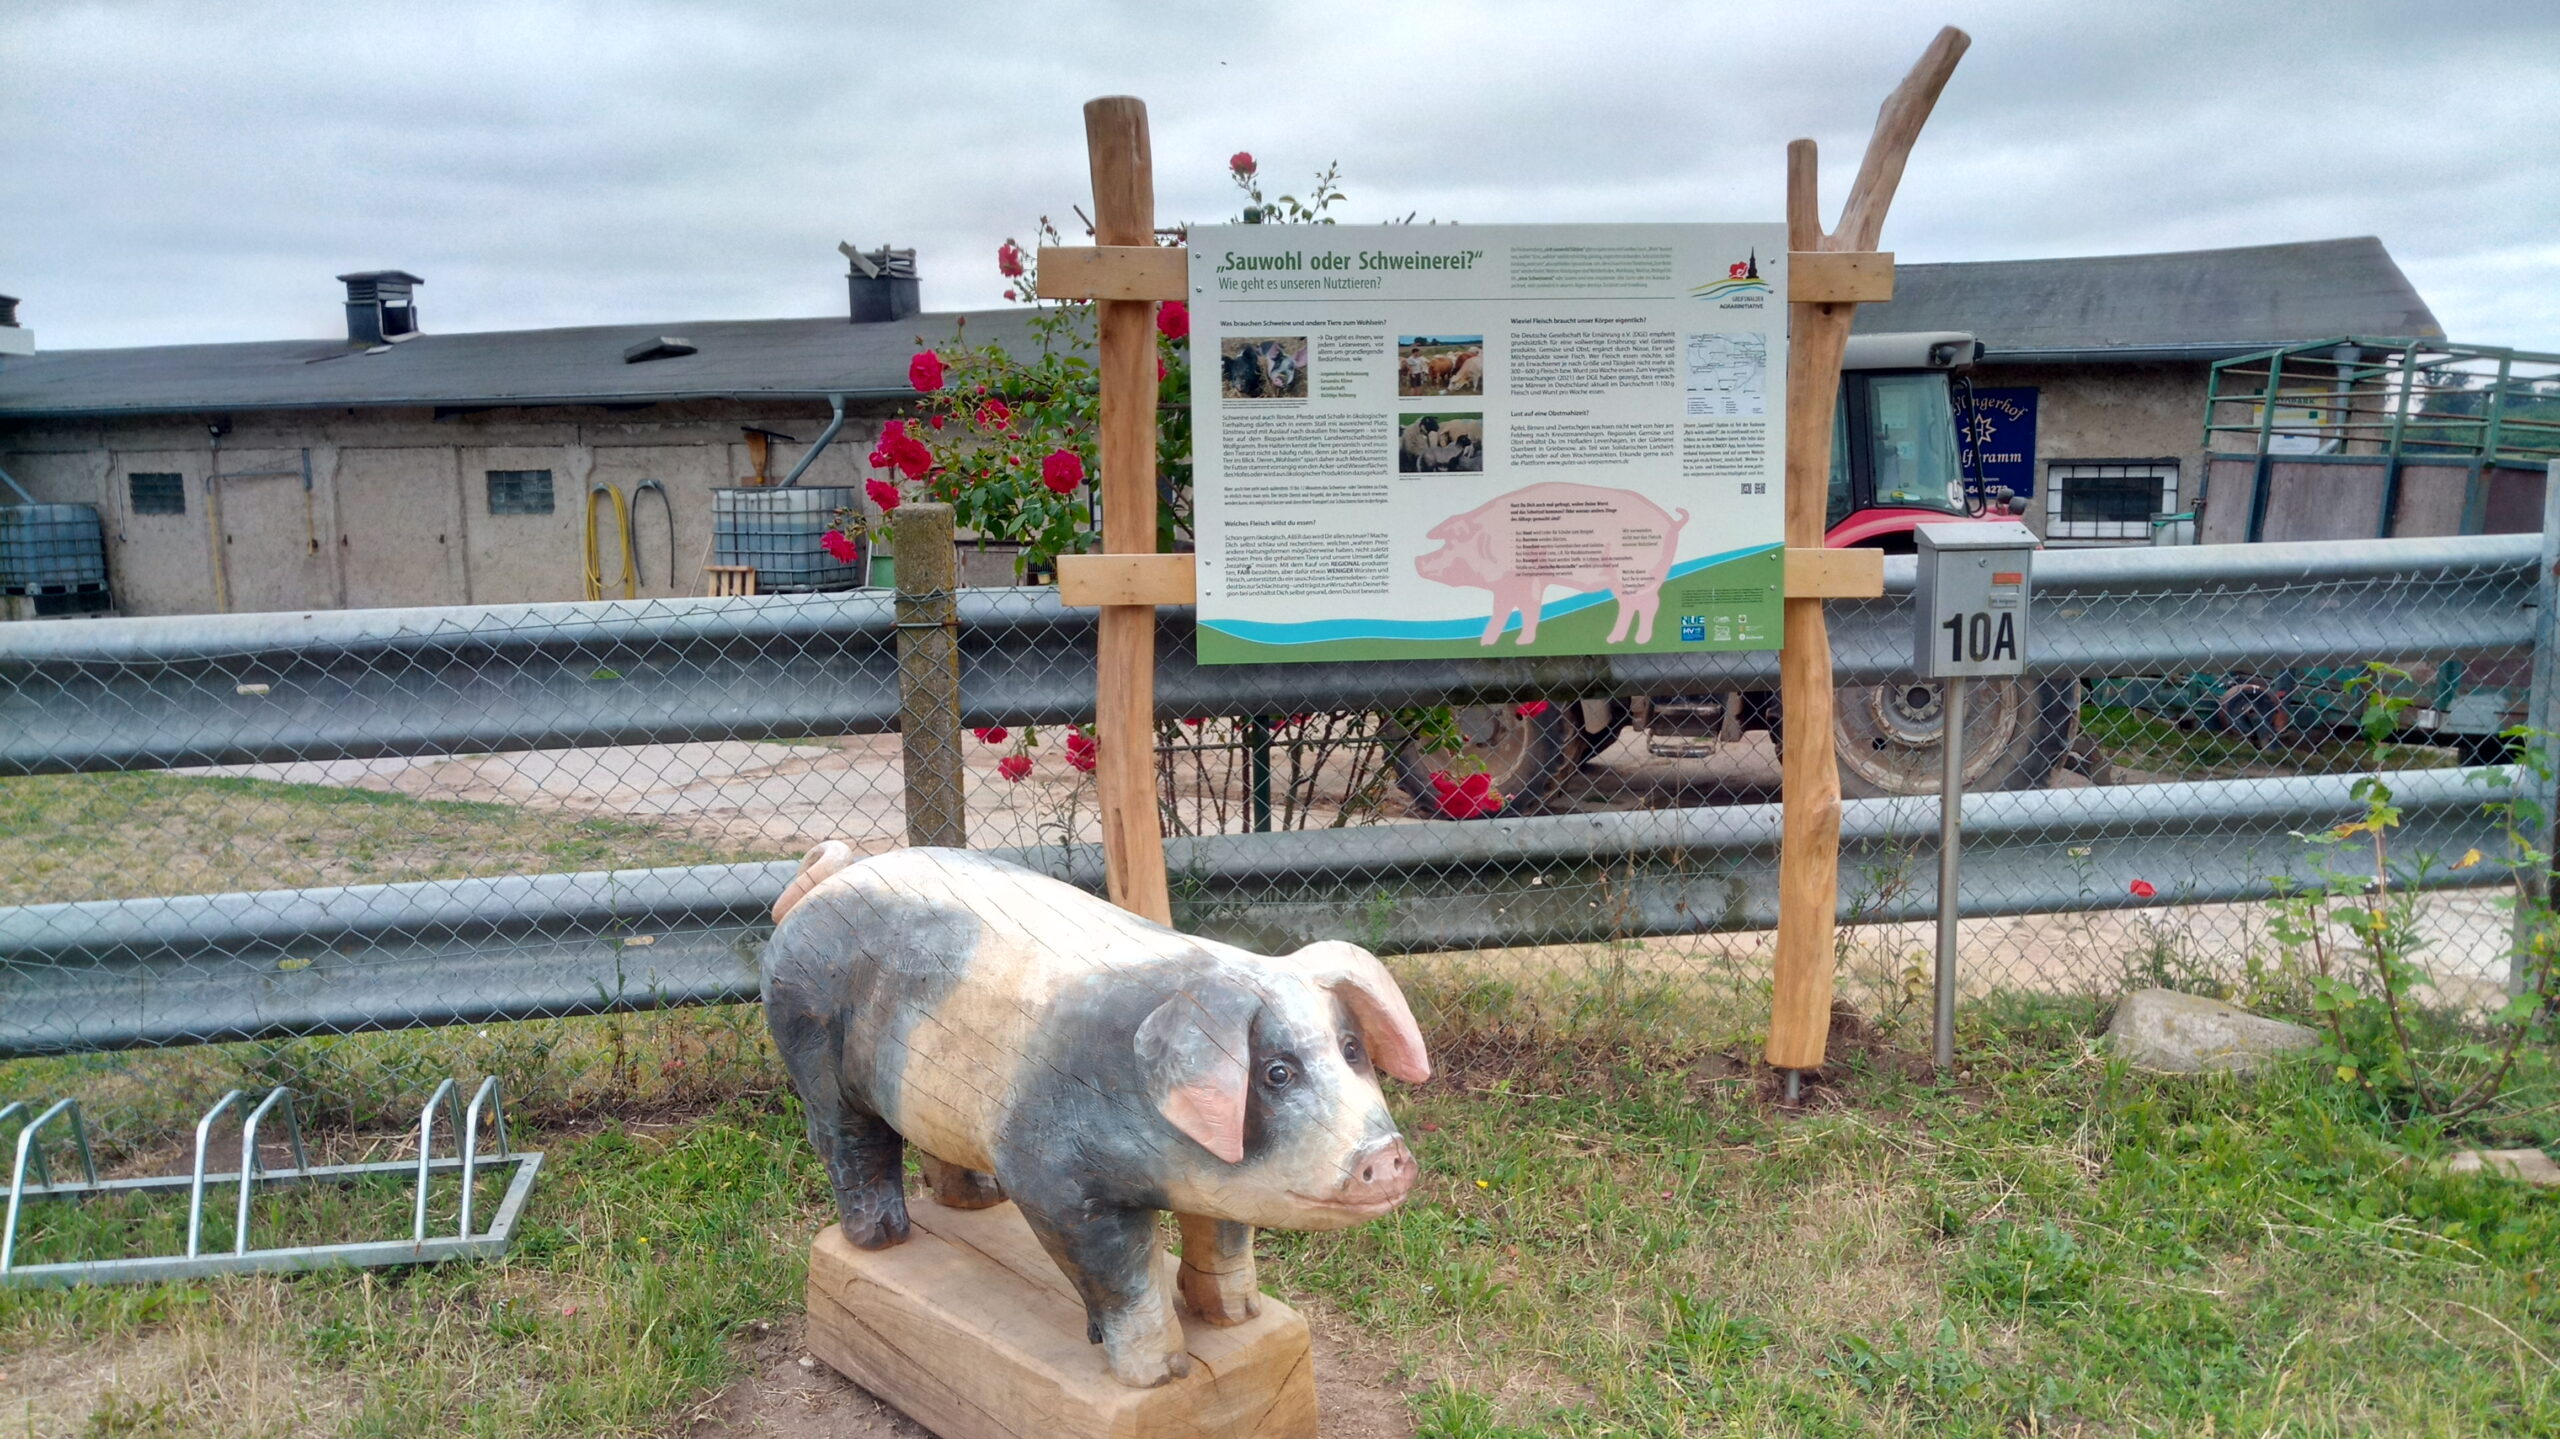 Stallgebäude mit Zaun und Infotafel, davor eine Holzskulptur in Form eines Schweins.